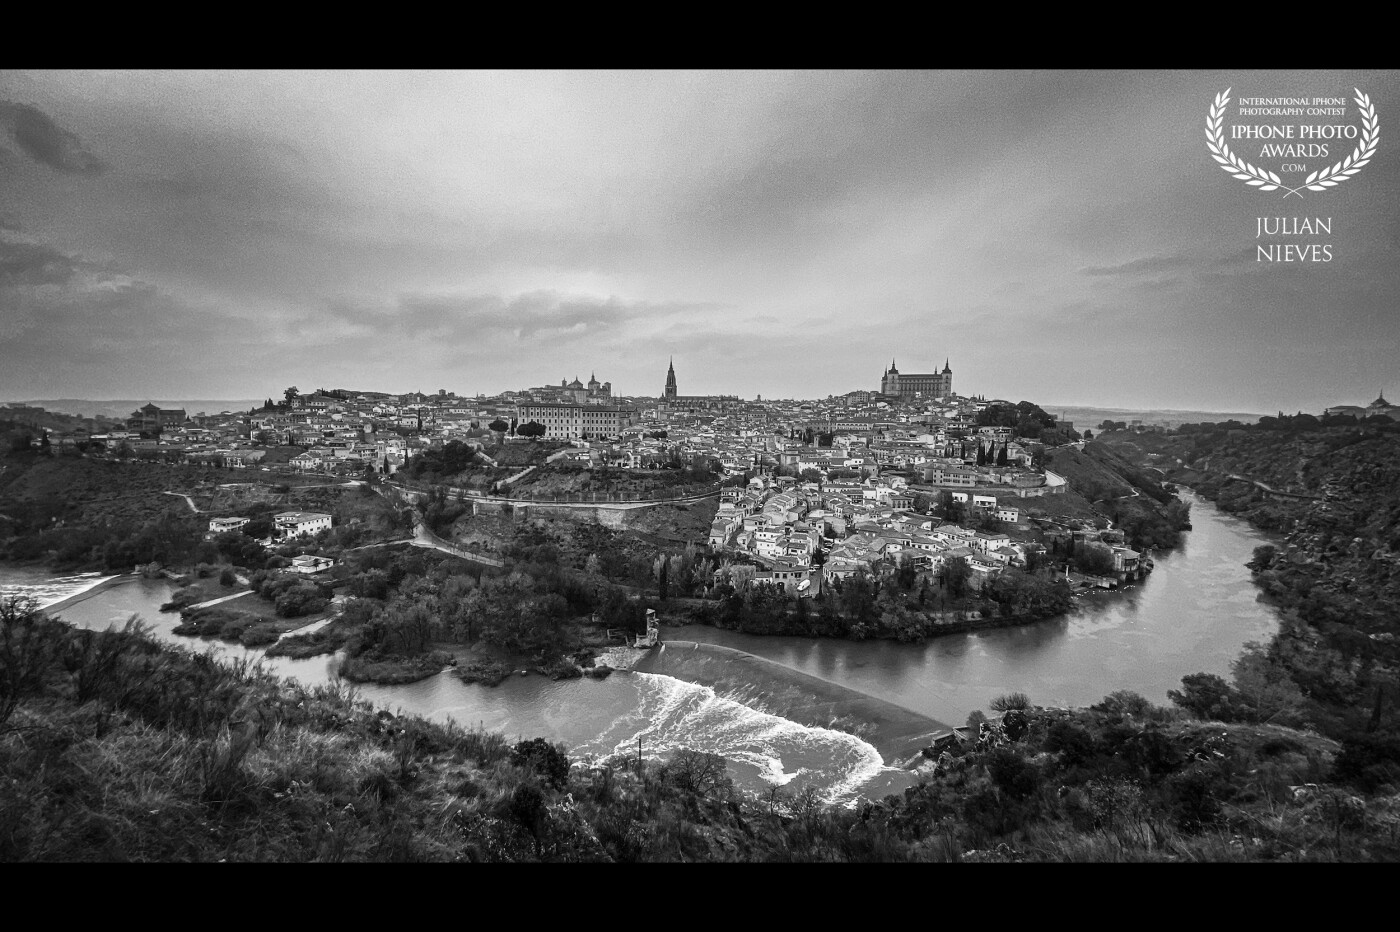 Una imagen panorámica de la ciudad de las 3 culturas "Toledo", imagen realizada desde uno de los lugares más privilegiados para poder observar la majestuosidad desde el mirador situado en una carretera que rodea el rio Tajo.